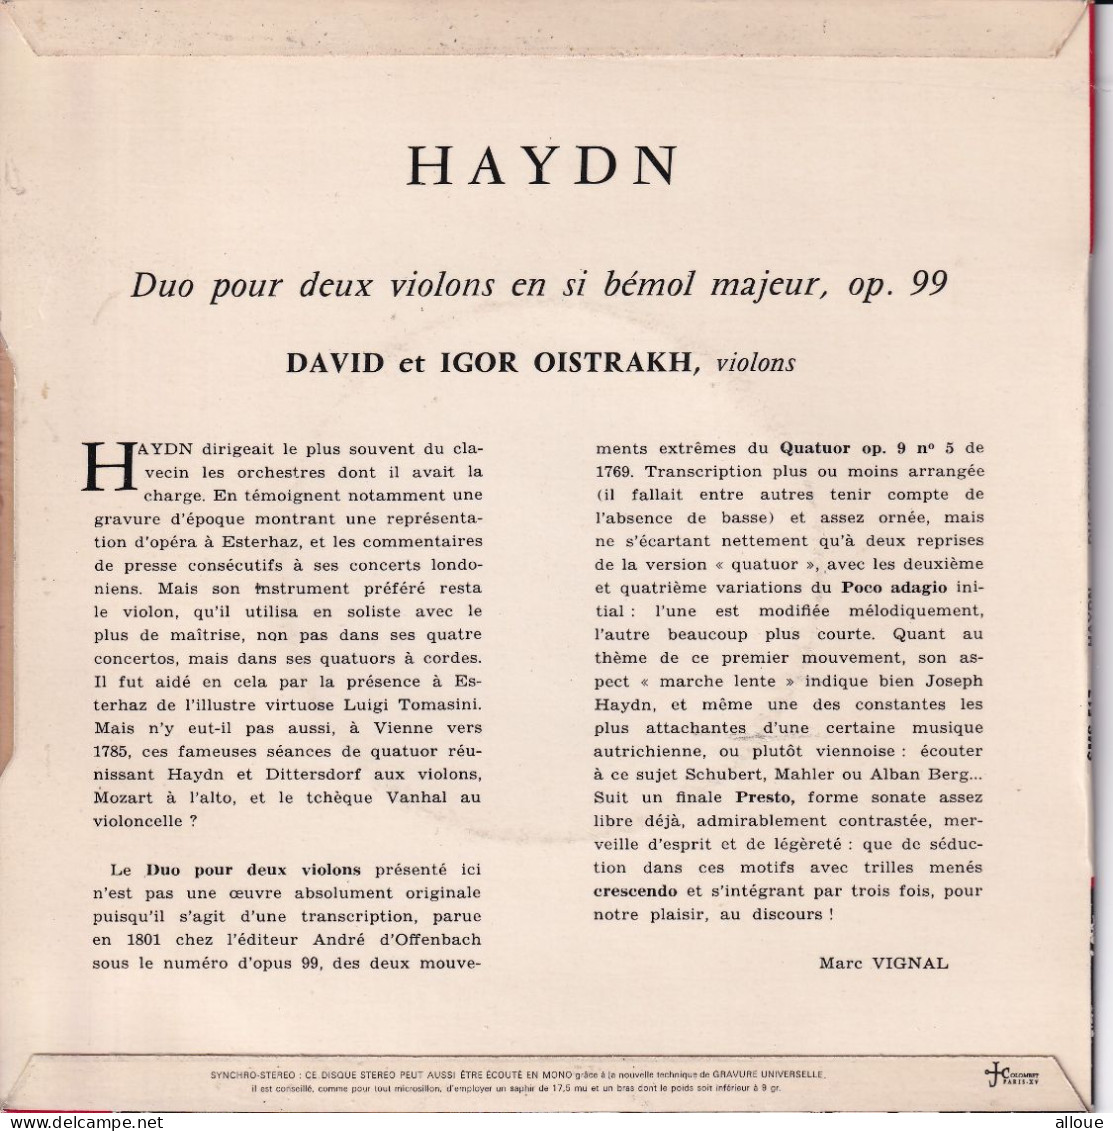 DAVID & IGOR OISTRAKH JOUENT HAYDN - FR EP - DUO POUR DEUX VIOLONS EN SI BEMOL MAJEUR, OP. 99 - Classique